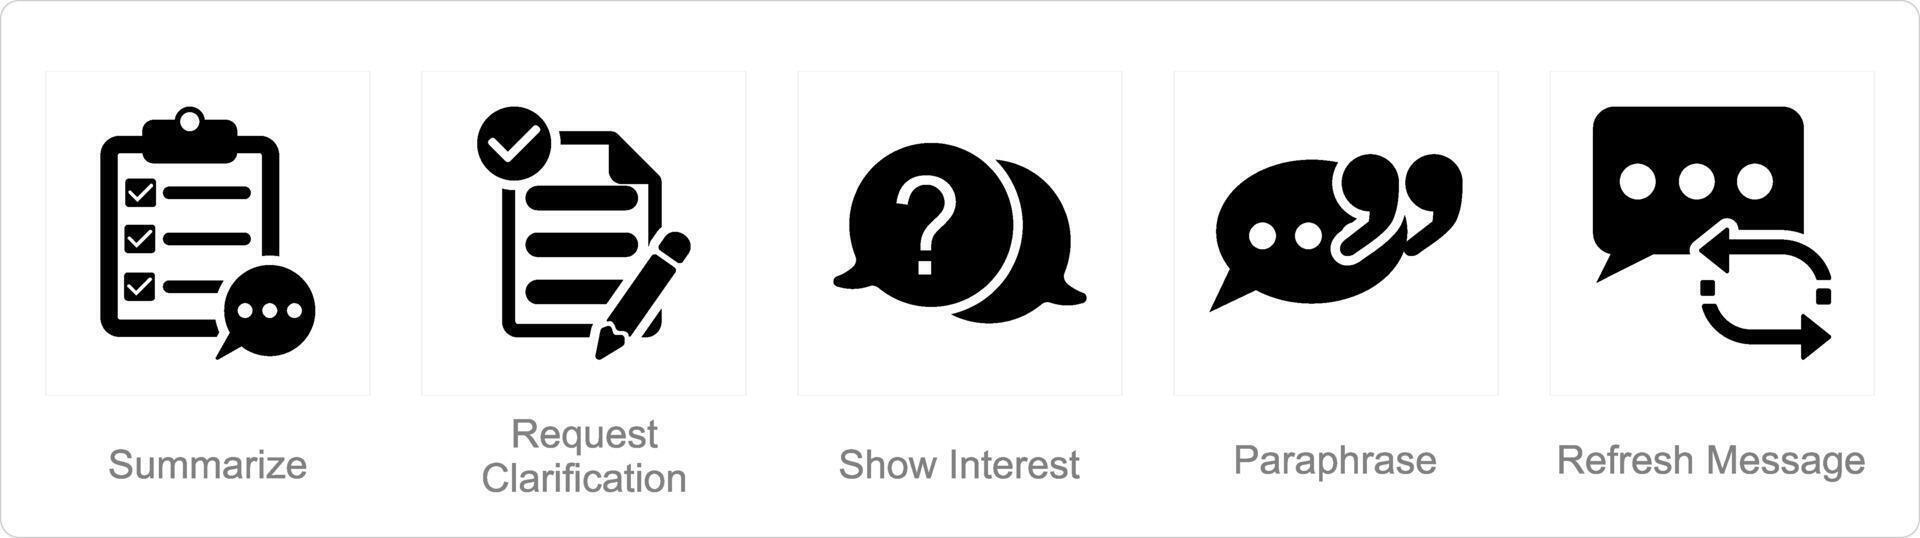 en uppsättning av 5 aktiva lyssnande ikoner som sammanfatta, begäran klargörande, visa intressera vektor